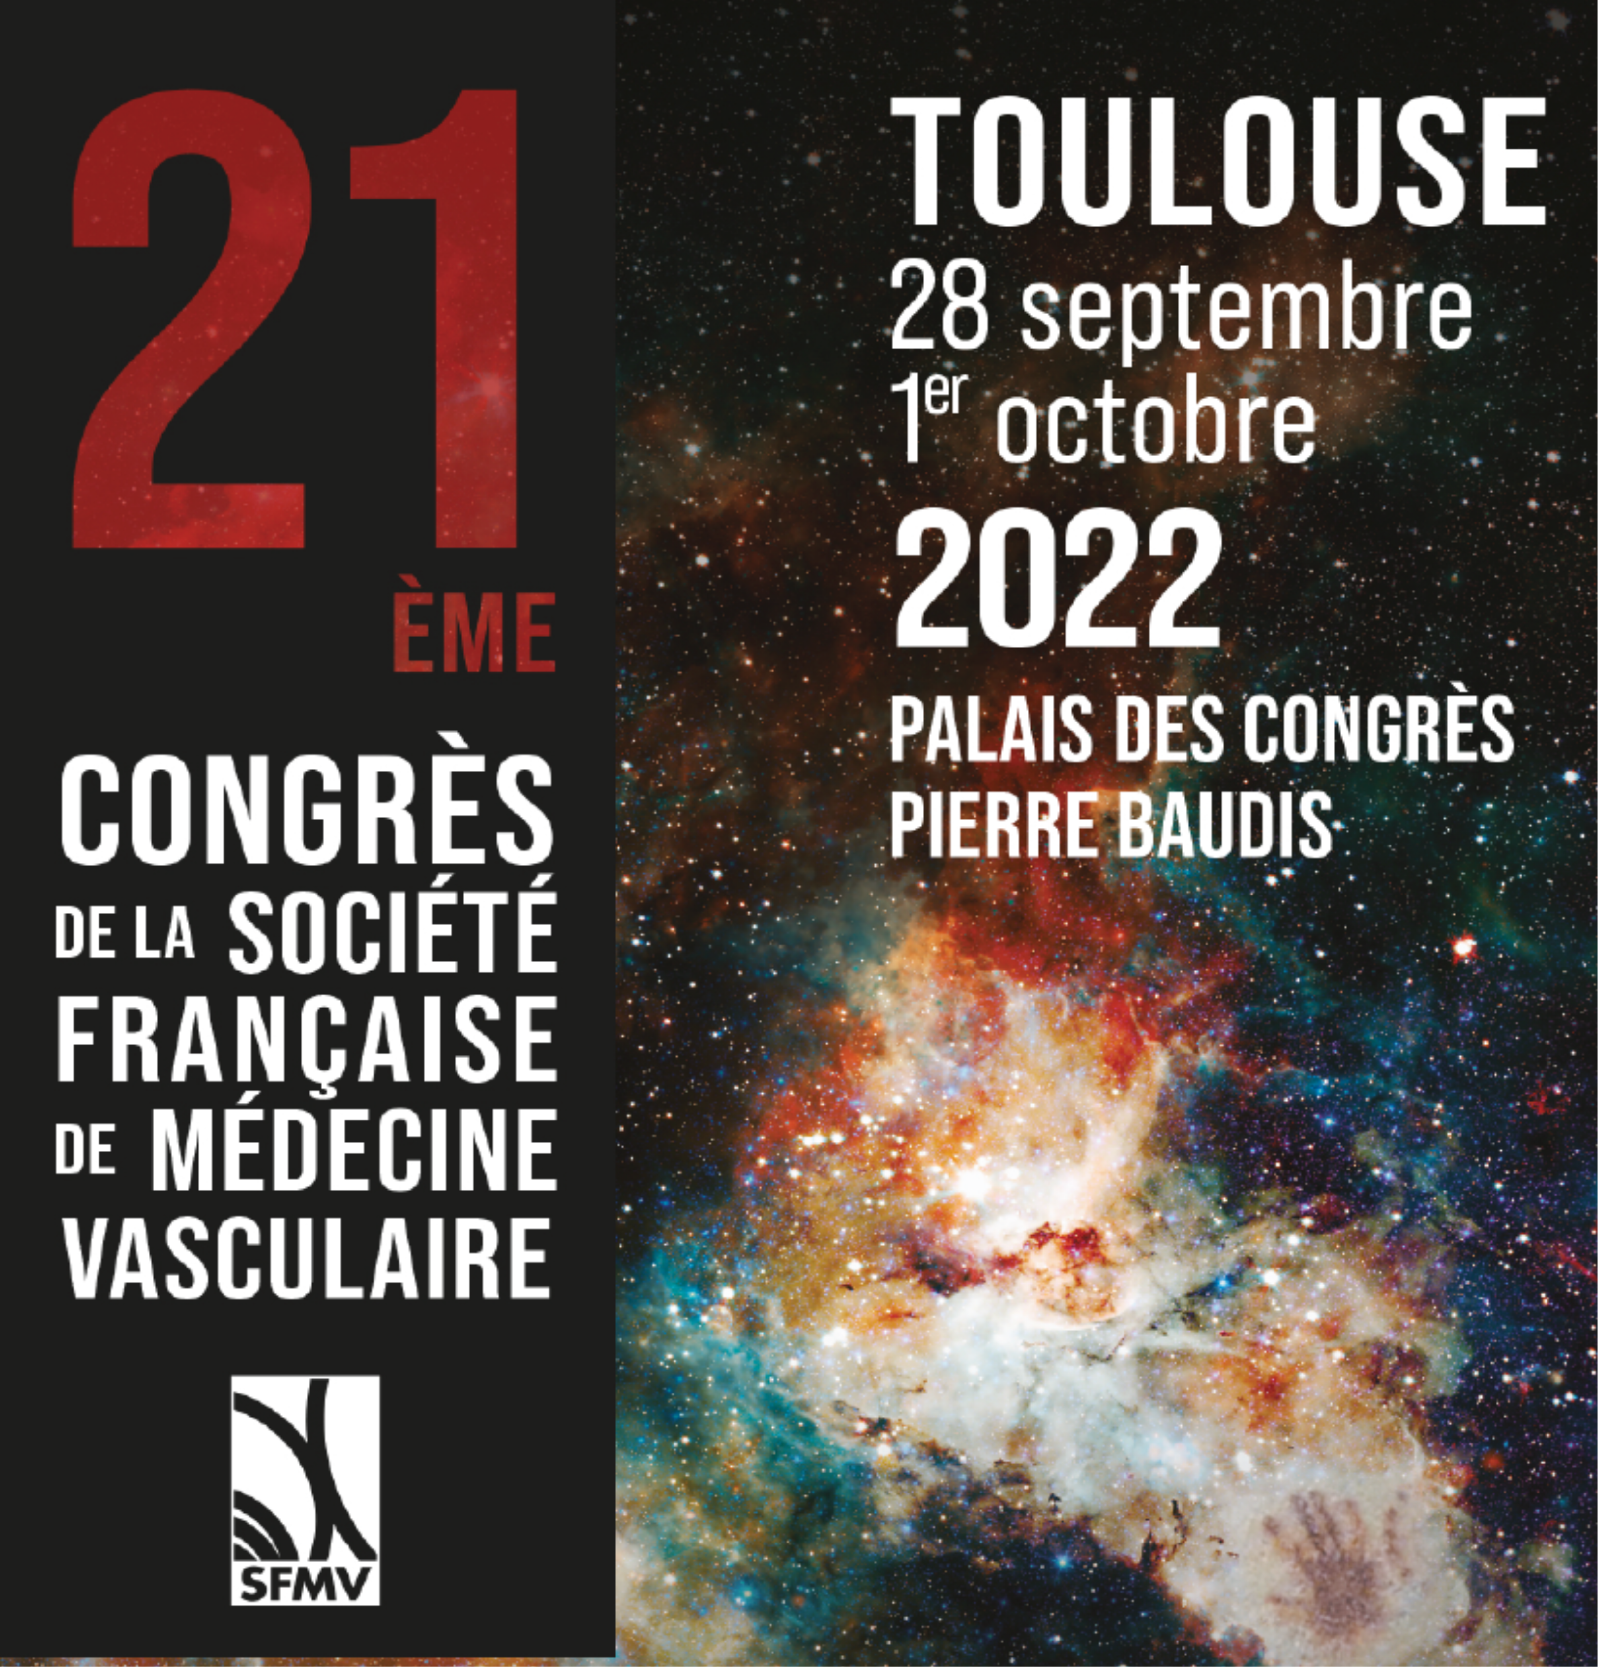 Congrès SFMV Toulouse 2022